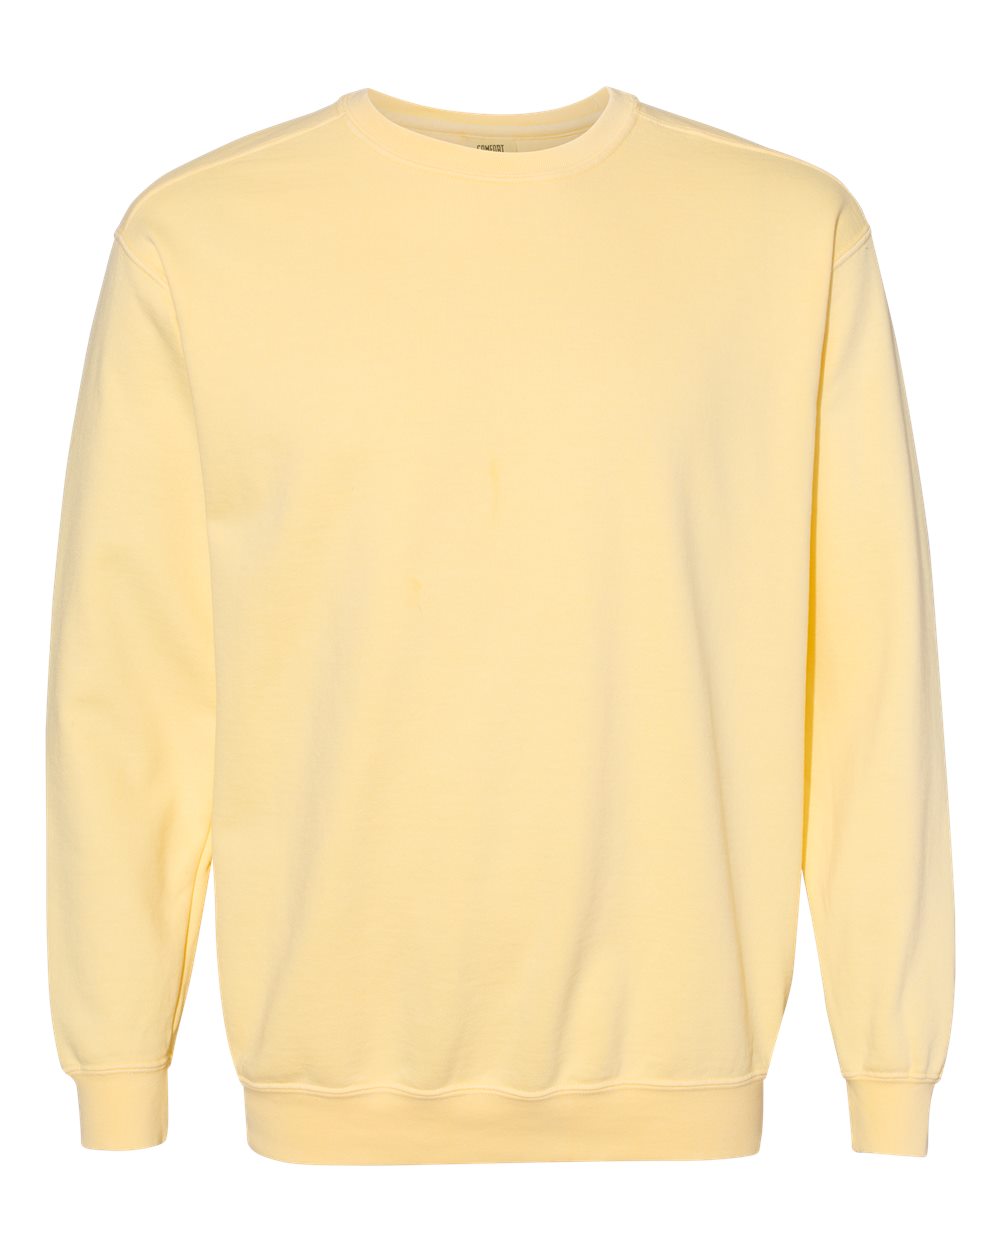 Comfort Colors Garment-Dyed Crewneck Sweatshirt (1566) in Butter